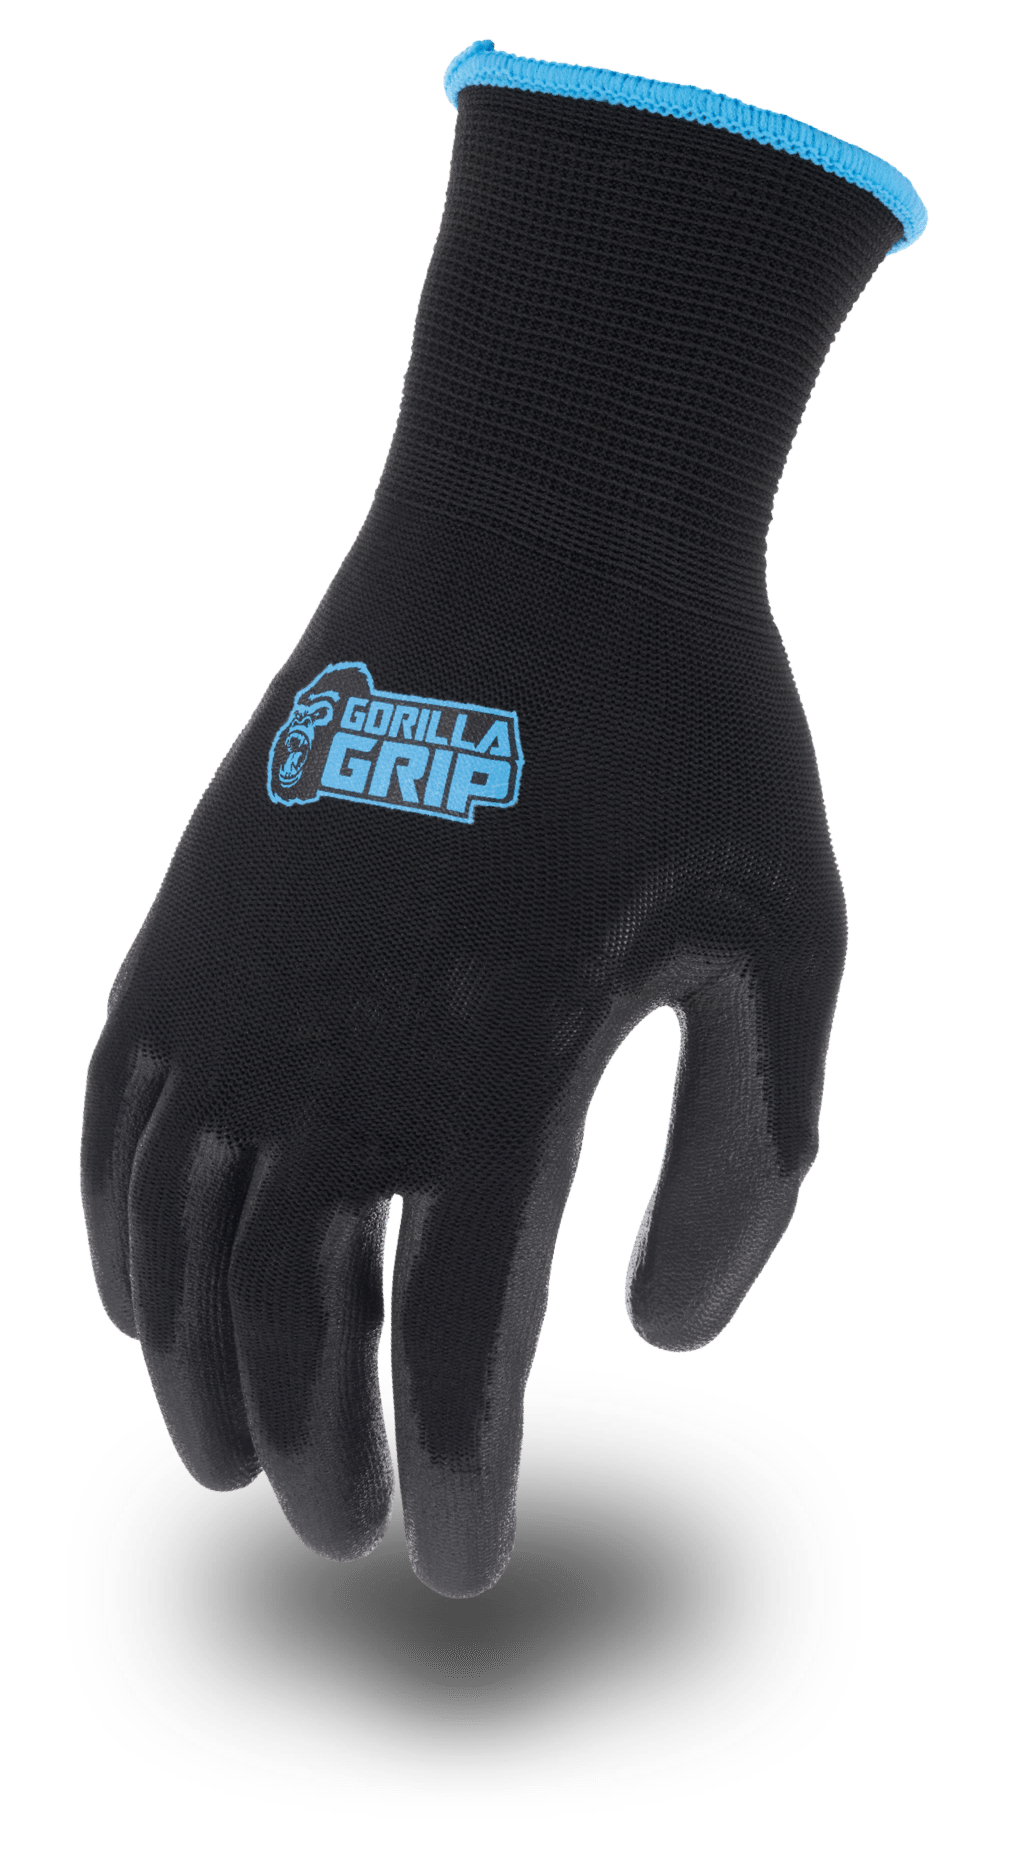 GORILLA GRIP TRAX - Gorilla Grip